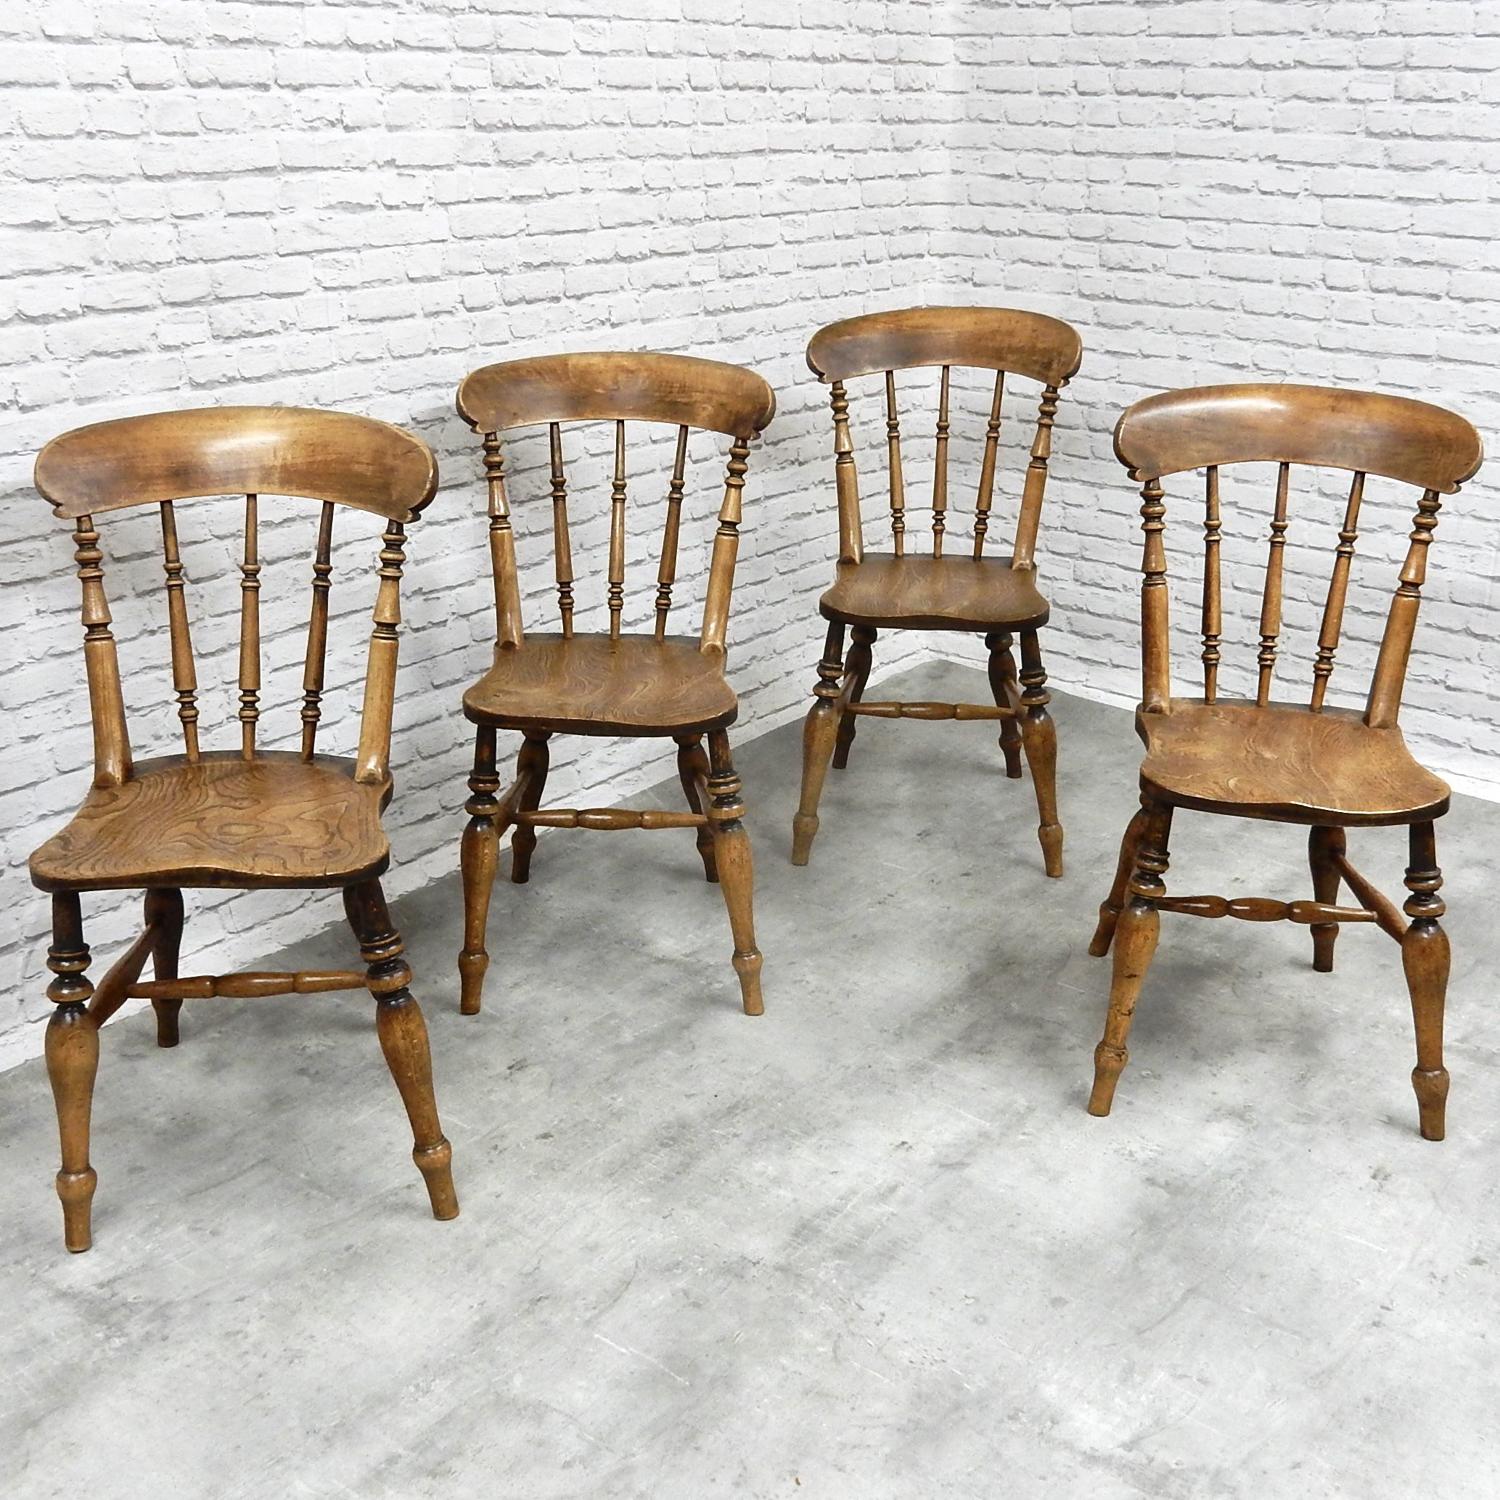 Antique Kitchen Chairs